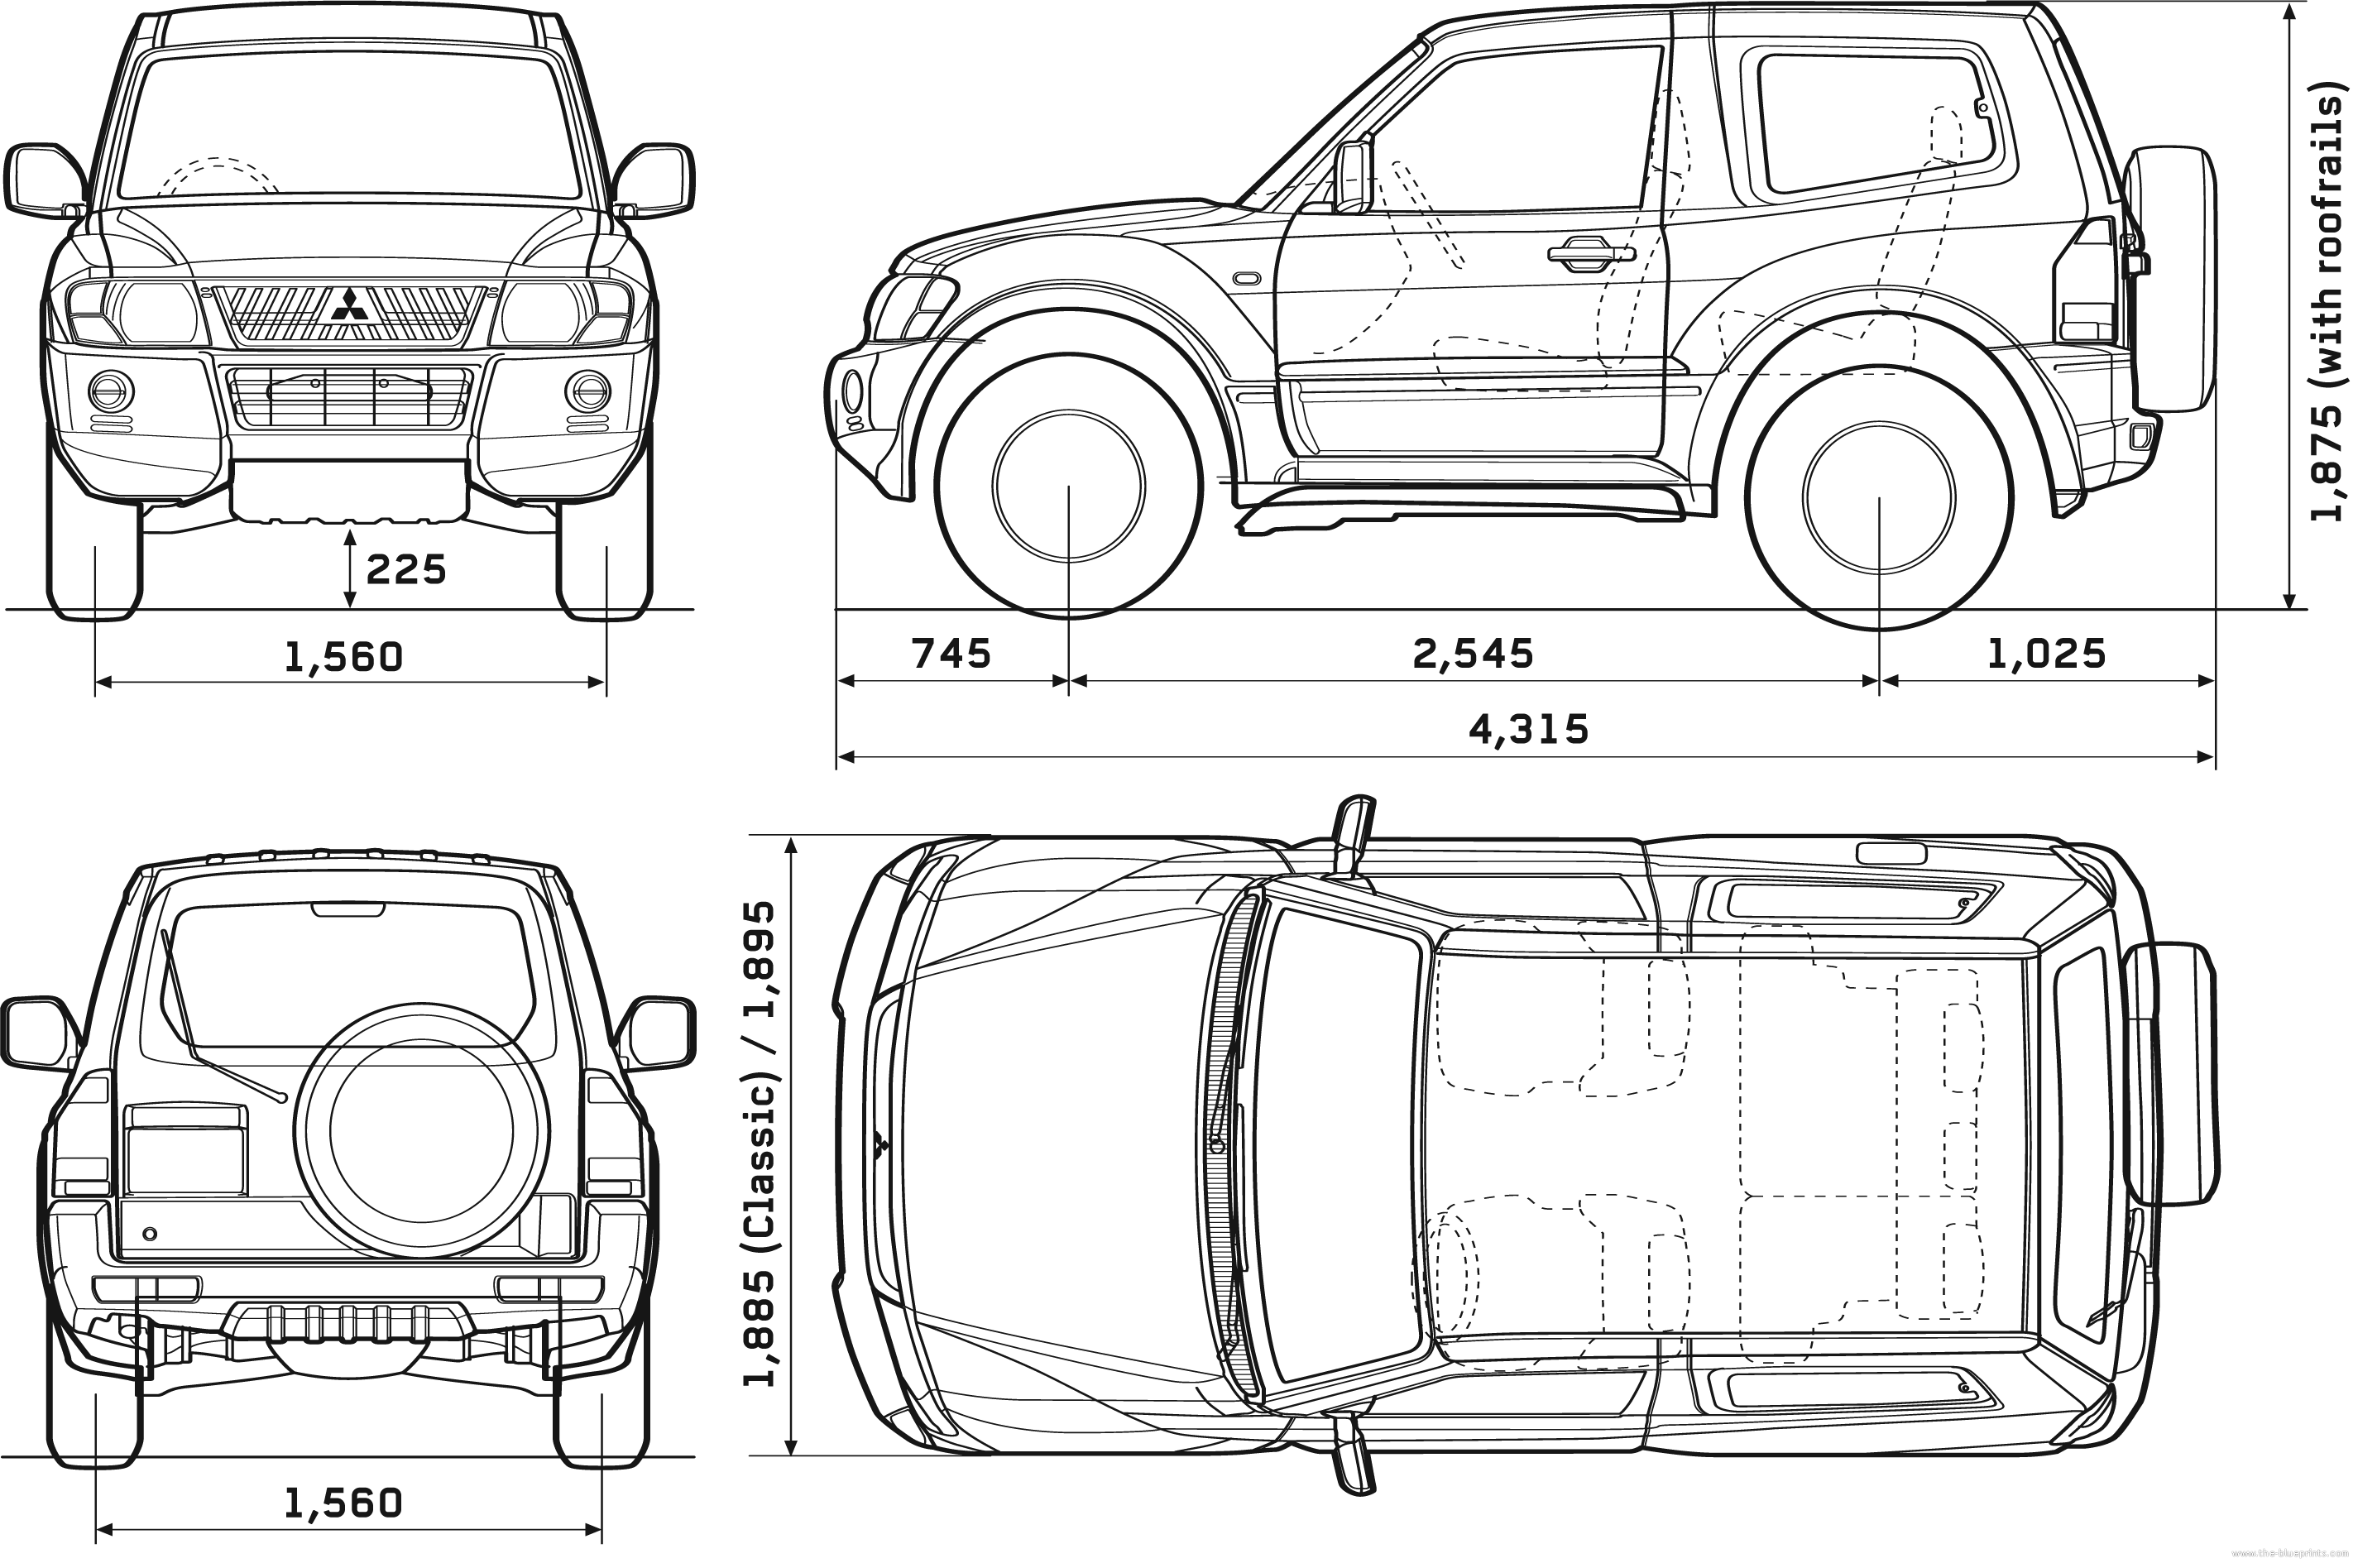 Mitsubishi Pajero blueprint